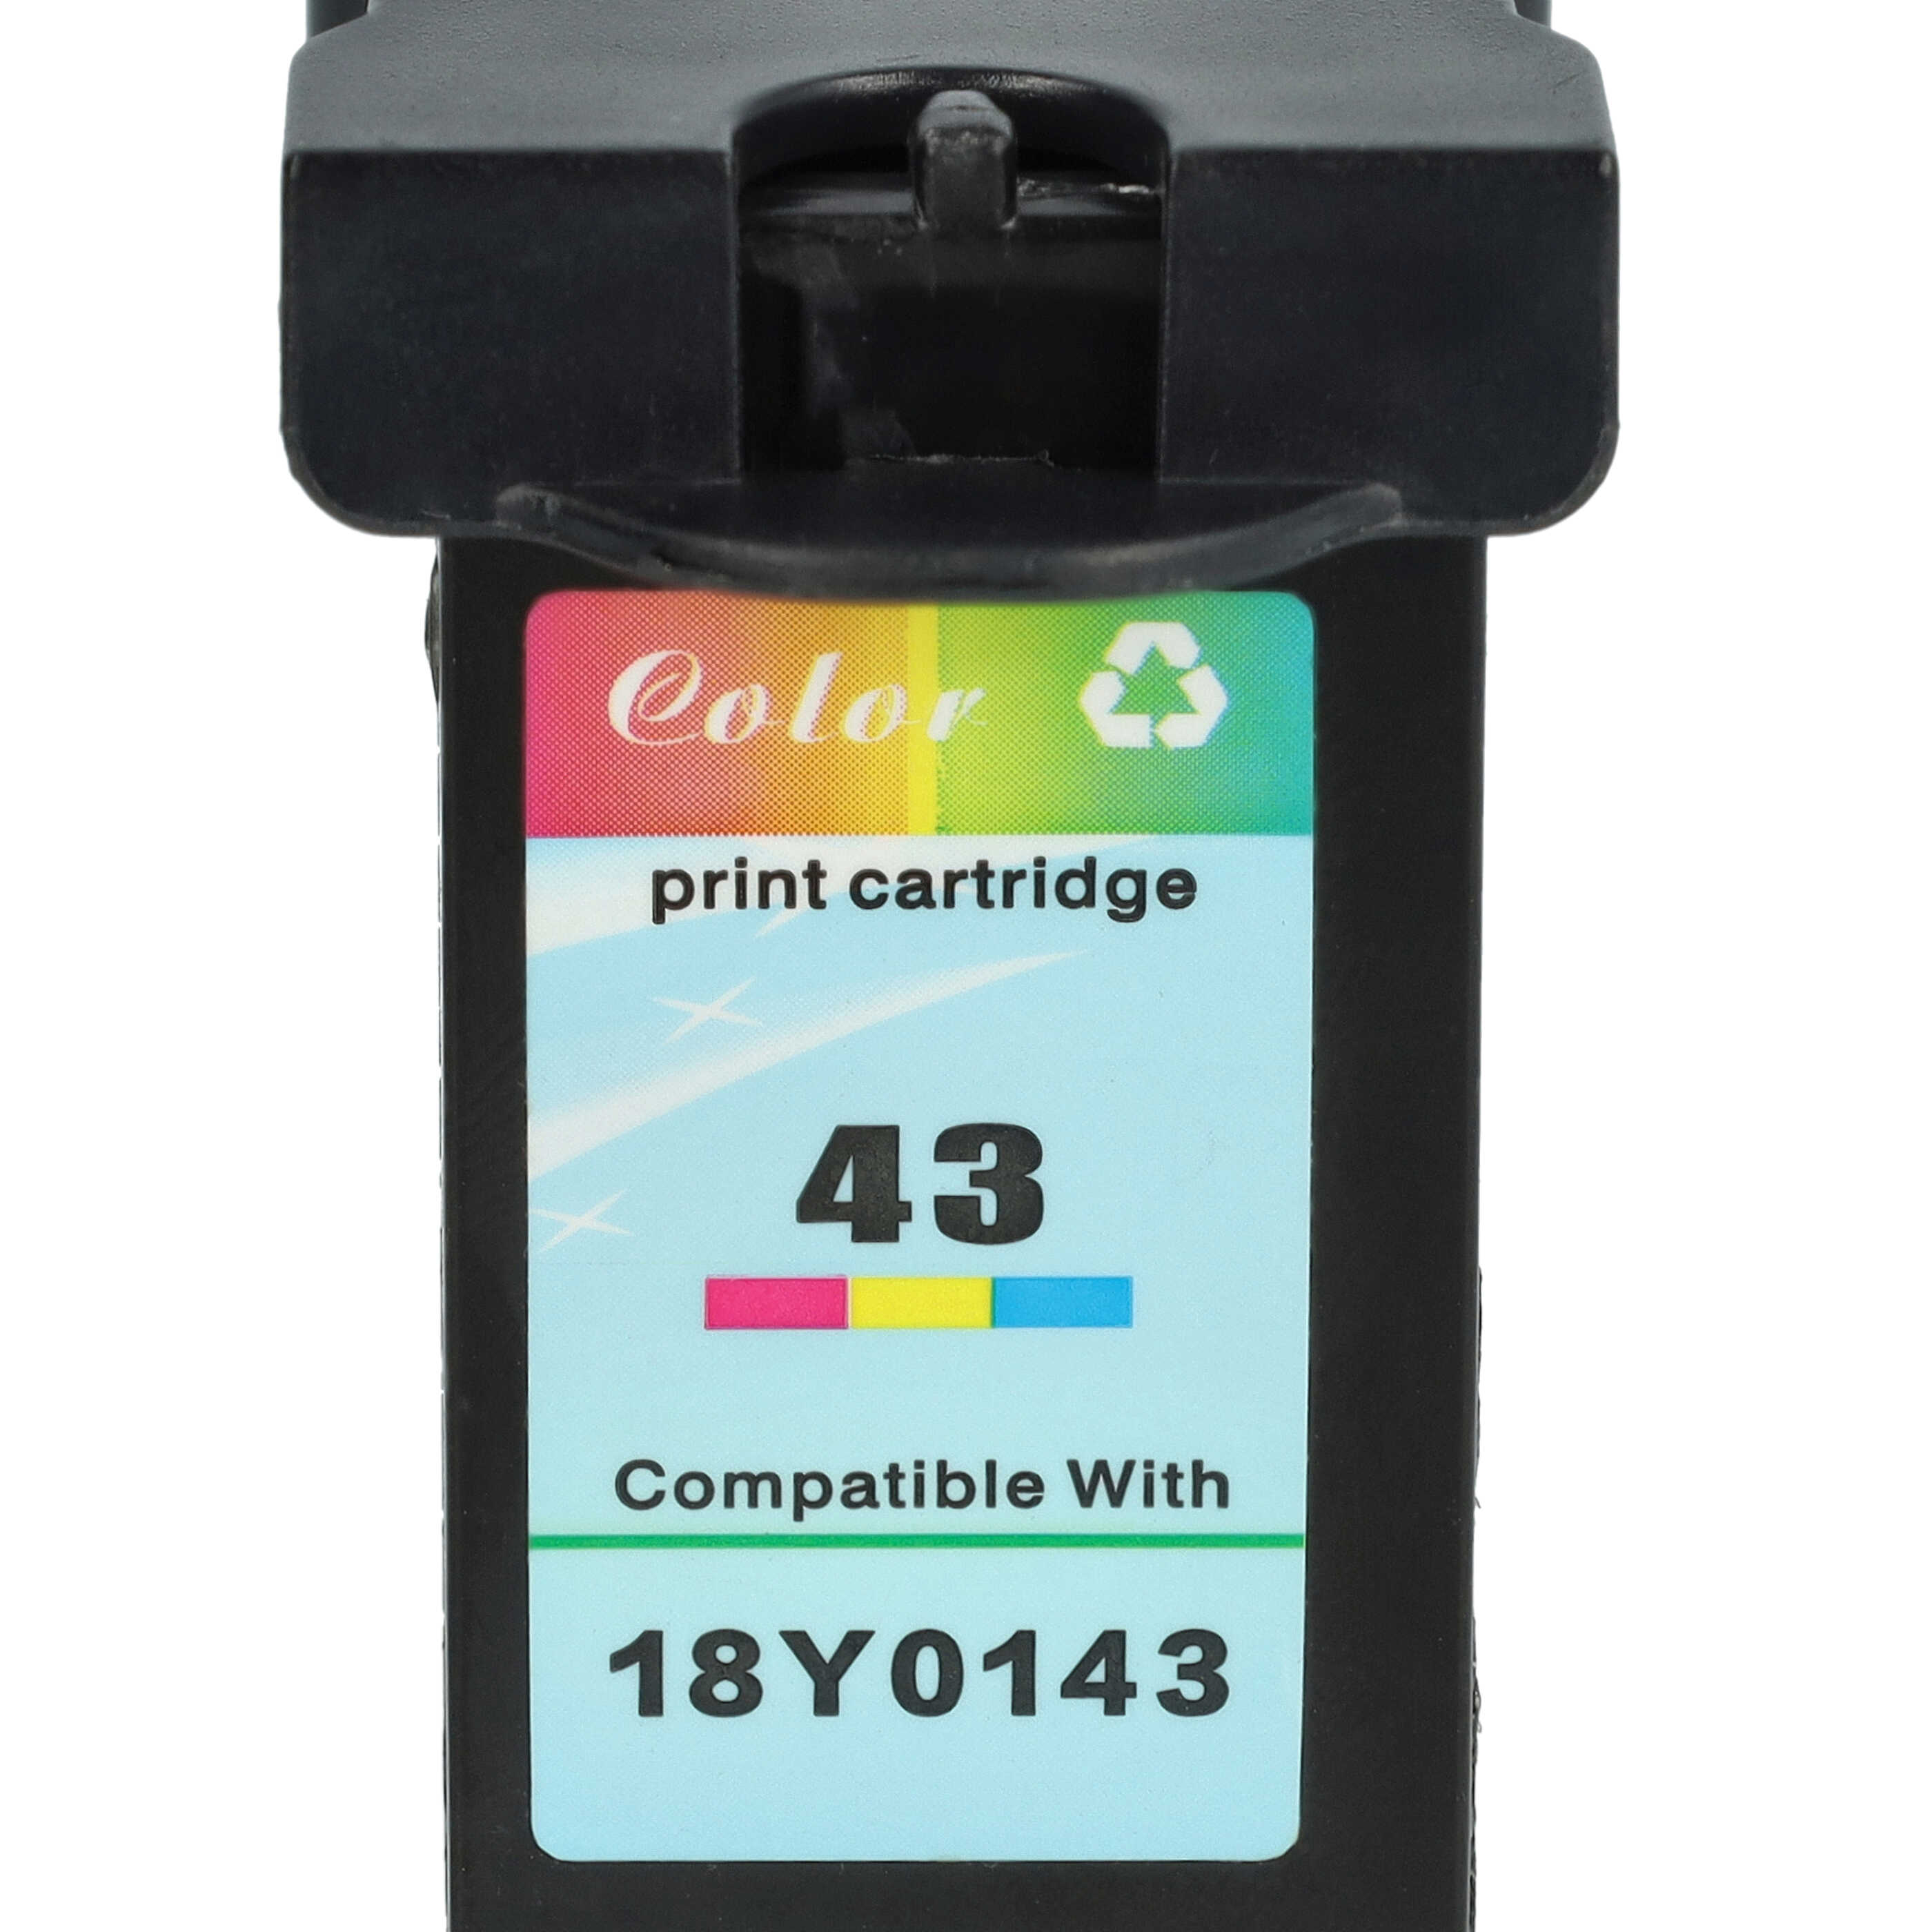 Cartouche remplace Lexmark 18Y0341E, 18Y0141E, 18Y0143 pour imprimante Lexmark - C/M/J remanufacturée 18ml